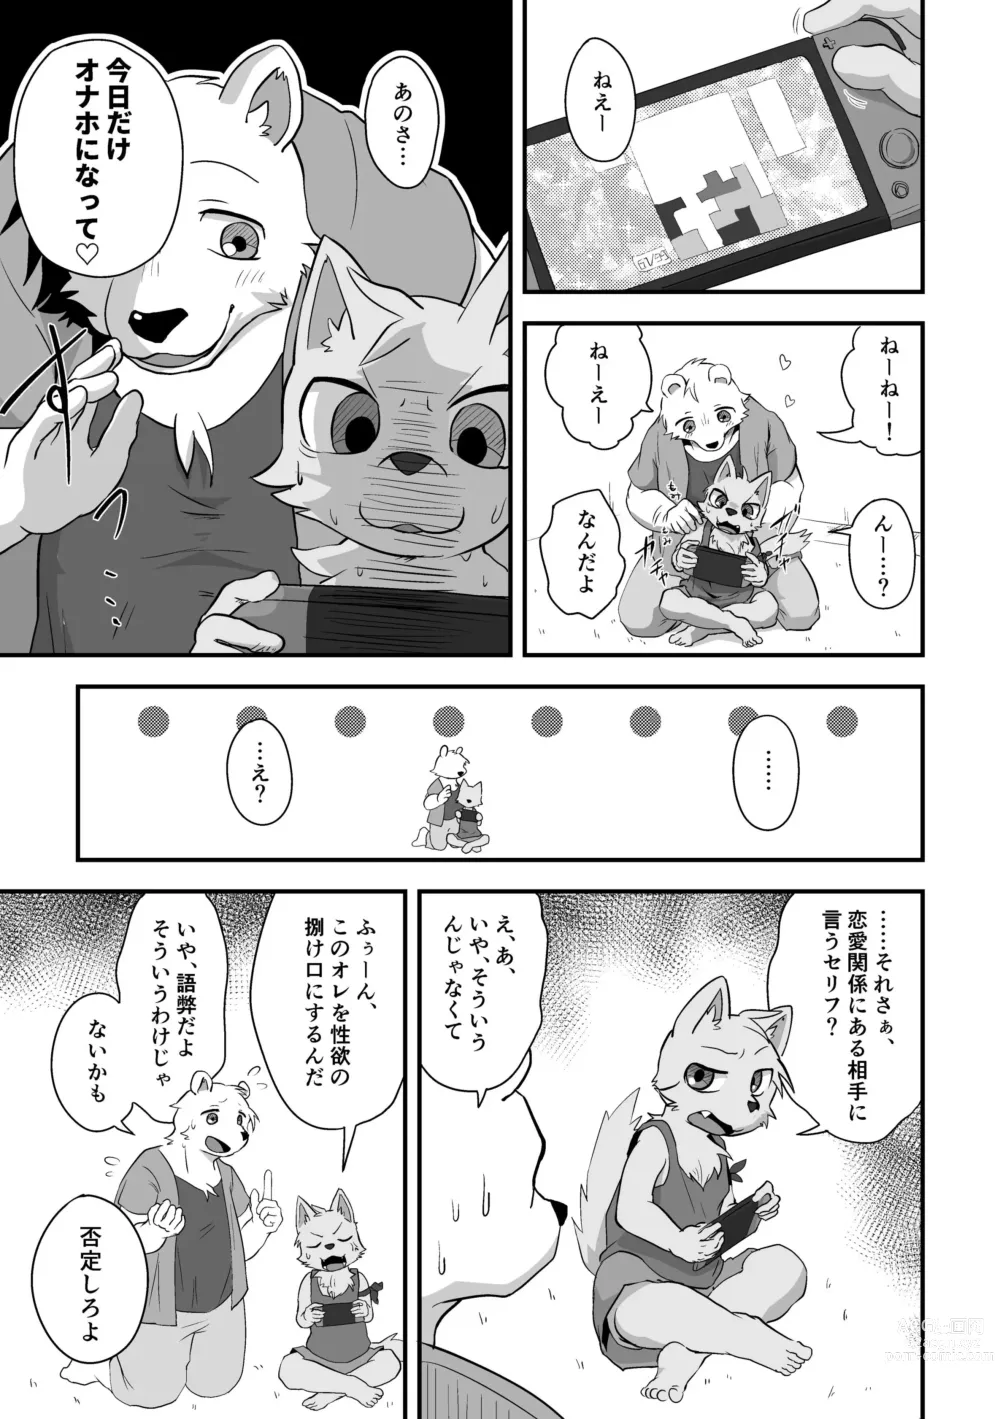 Page 1 of doujinshi Henkuma3!!